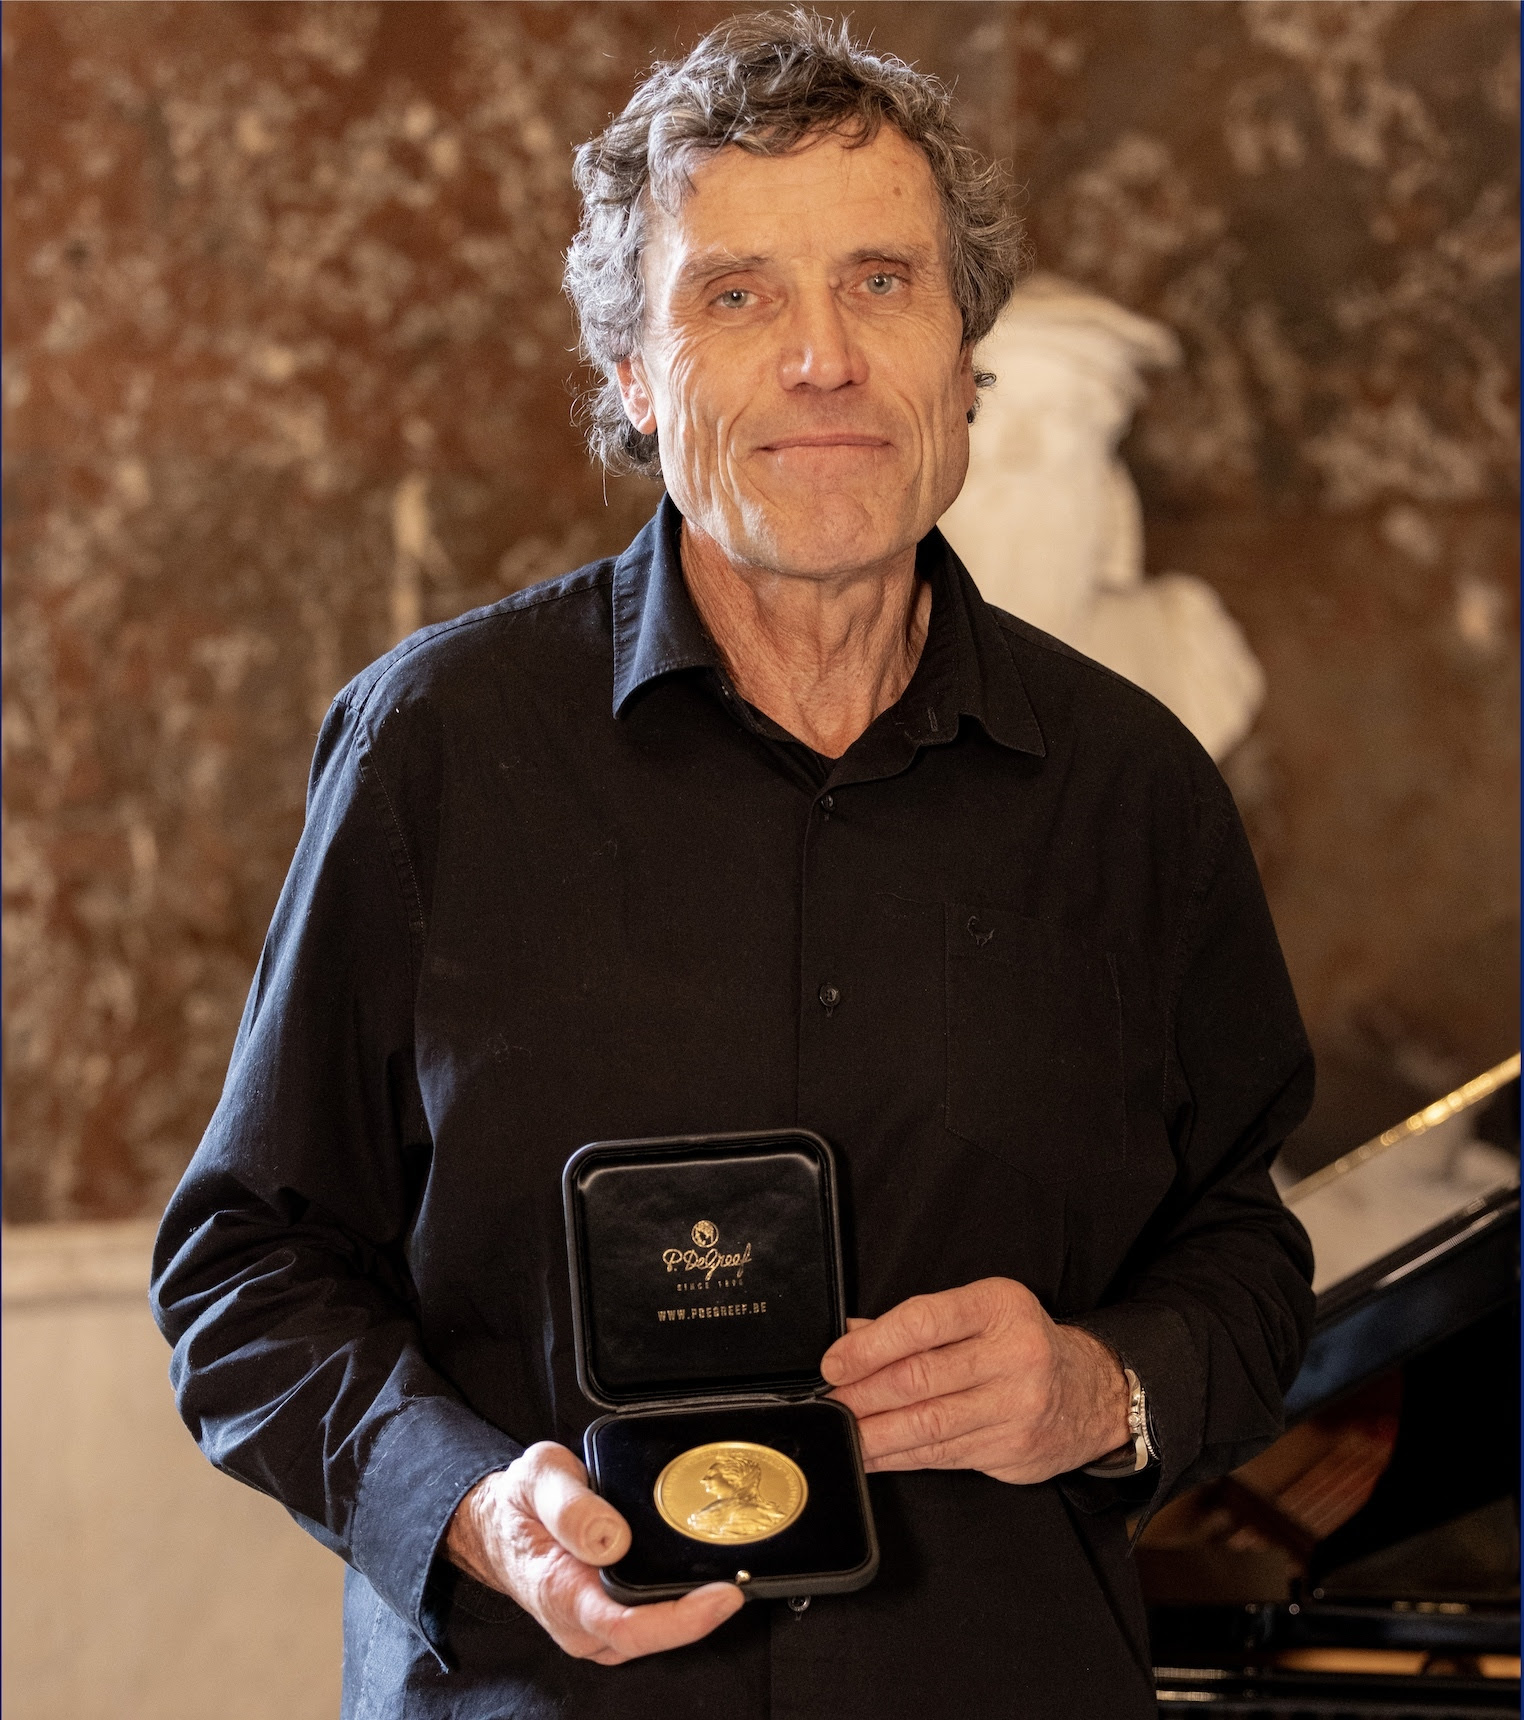 Alain-Hubert-Awarded-Prestigious-Belgica-Prize-at-Ceremony-in-Brussels.jpg